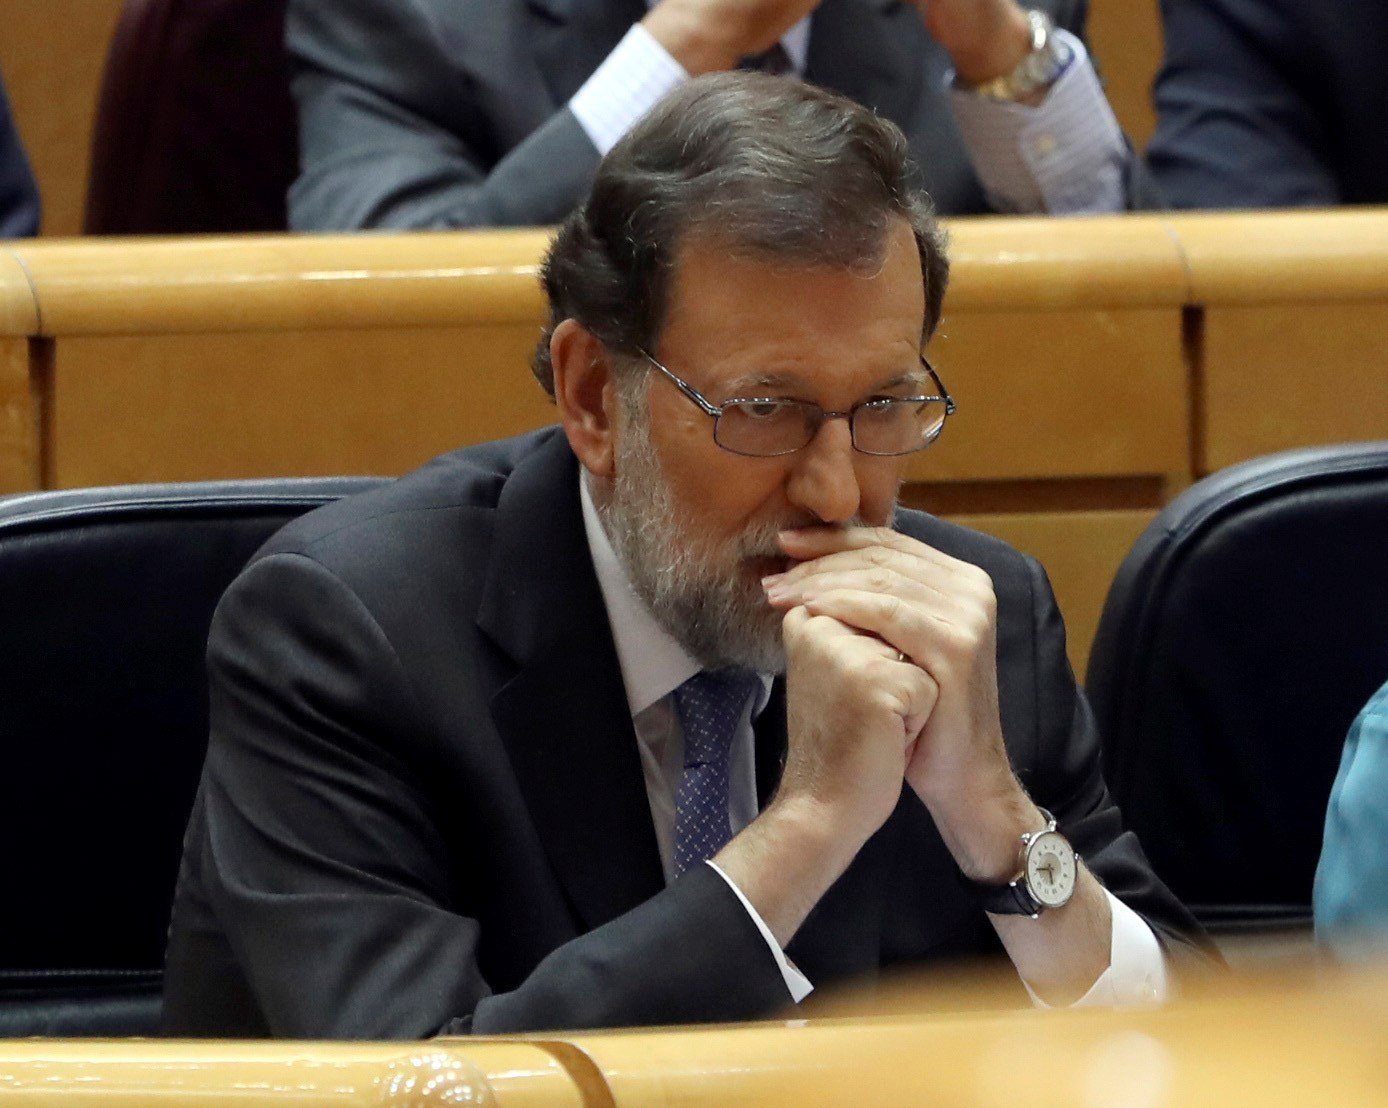 Rajoy valora el "seny" de la manifestación y obvia los incidentes